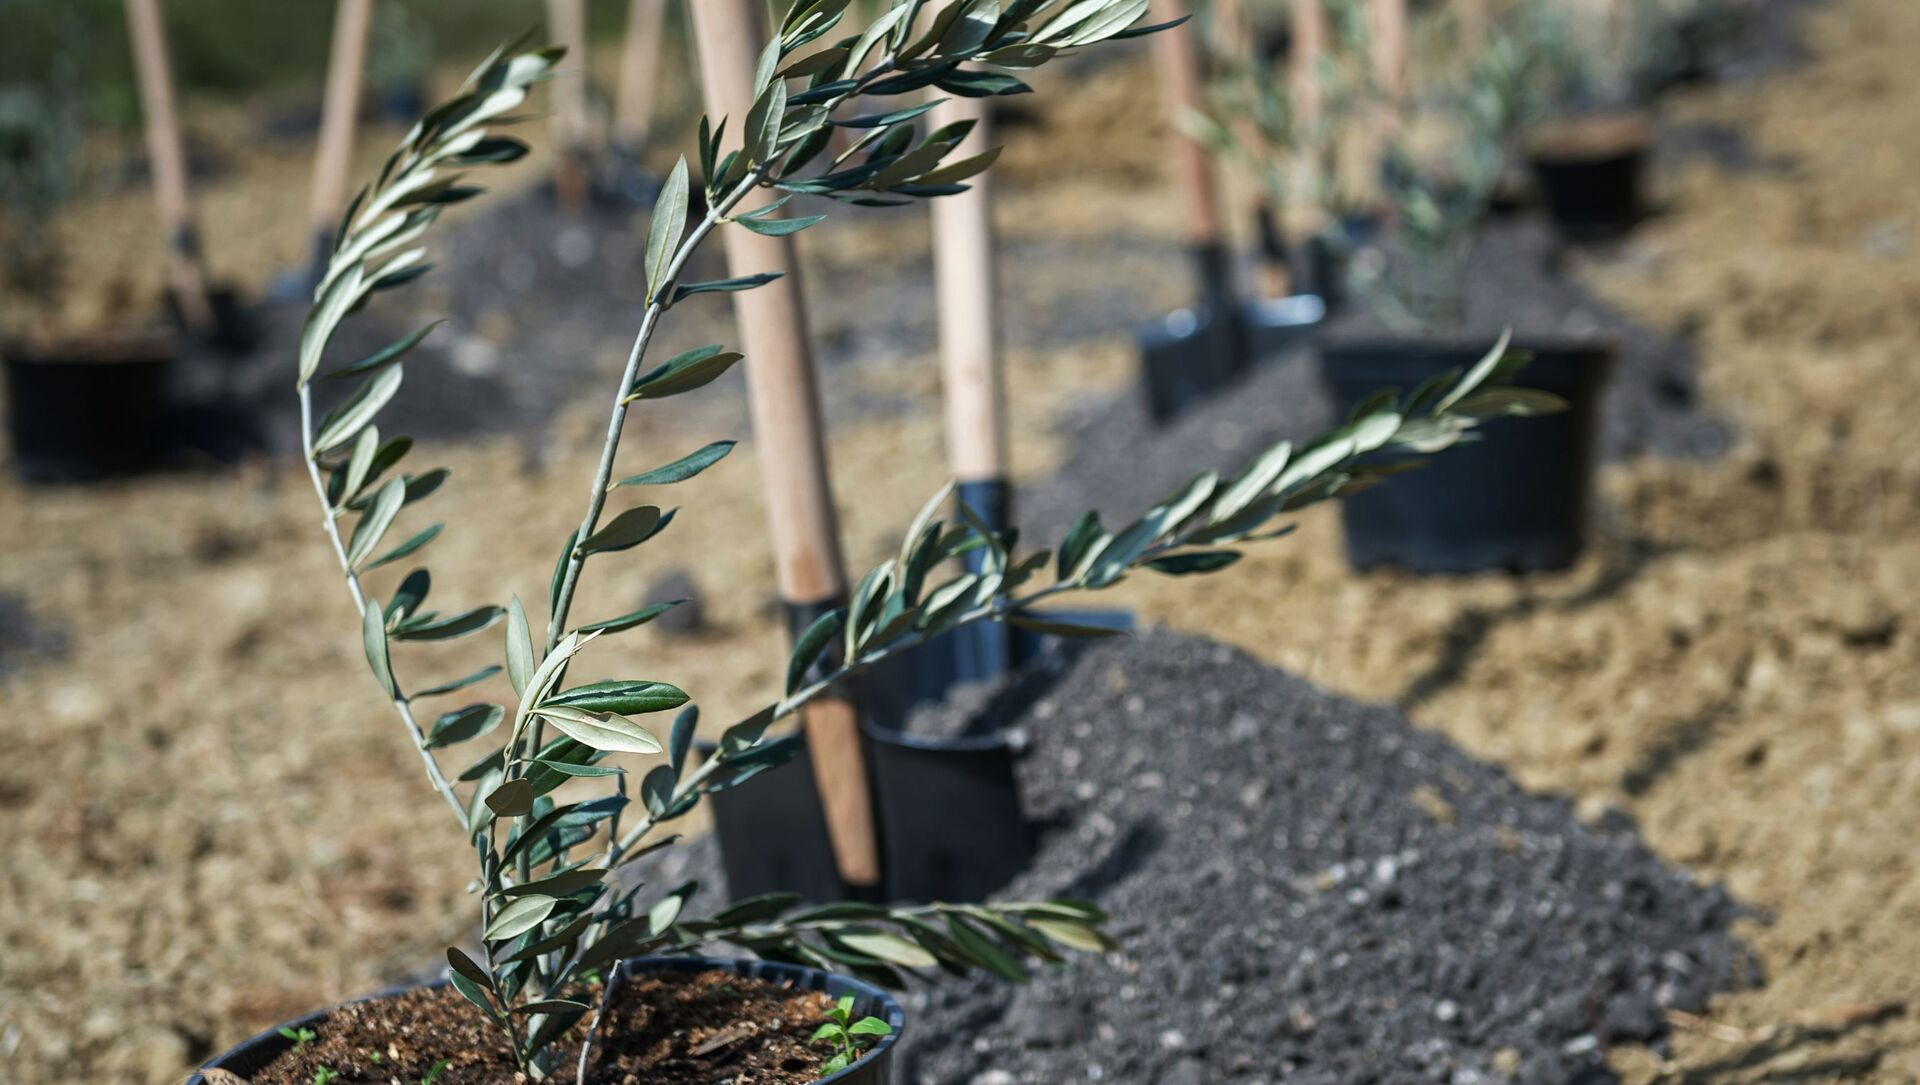 Саженец оливкового дерева перед началом церемонии высадки аллеи оливковых деревьев в Никитском ботаническом саду Крыма - Sputnik Արմենիա, 1920, 10.04.2021